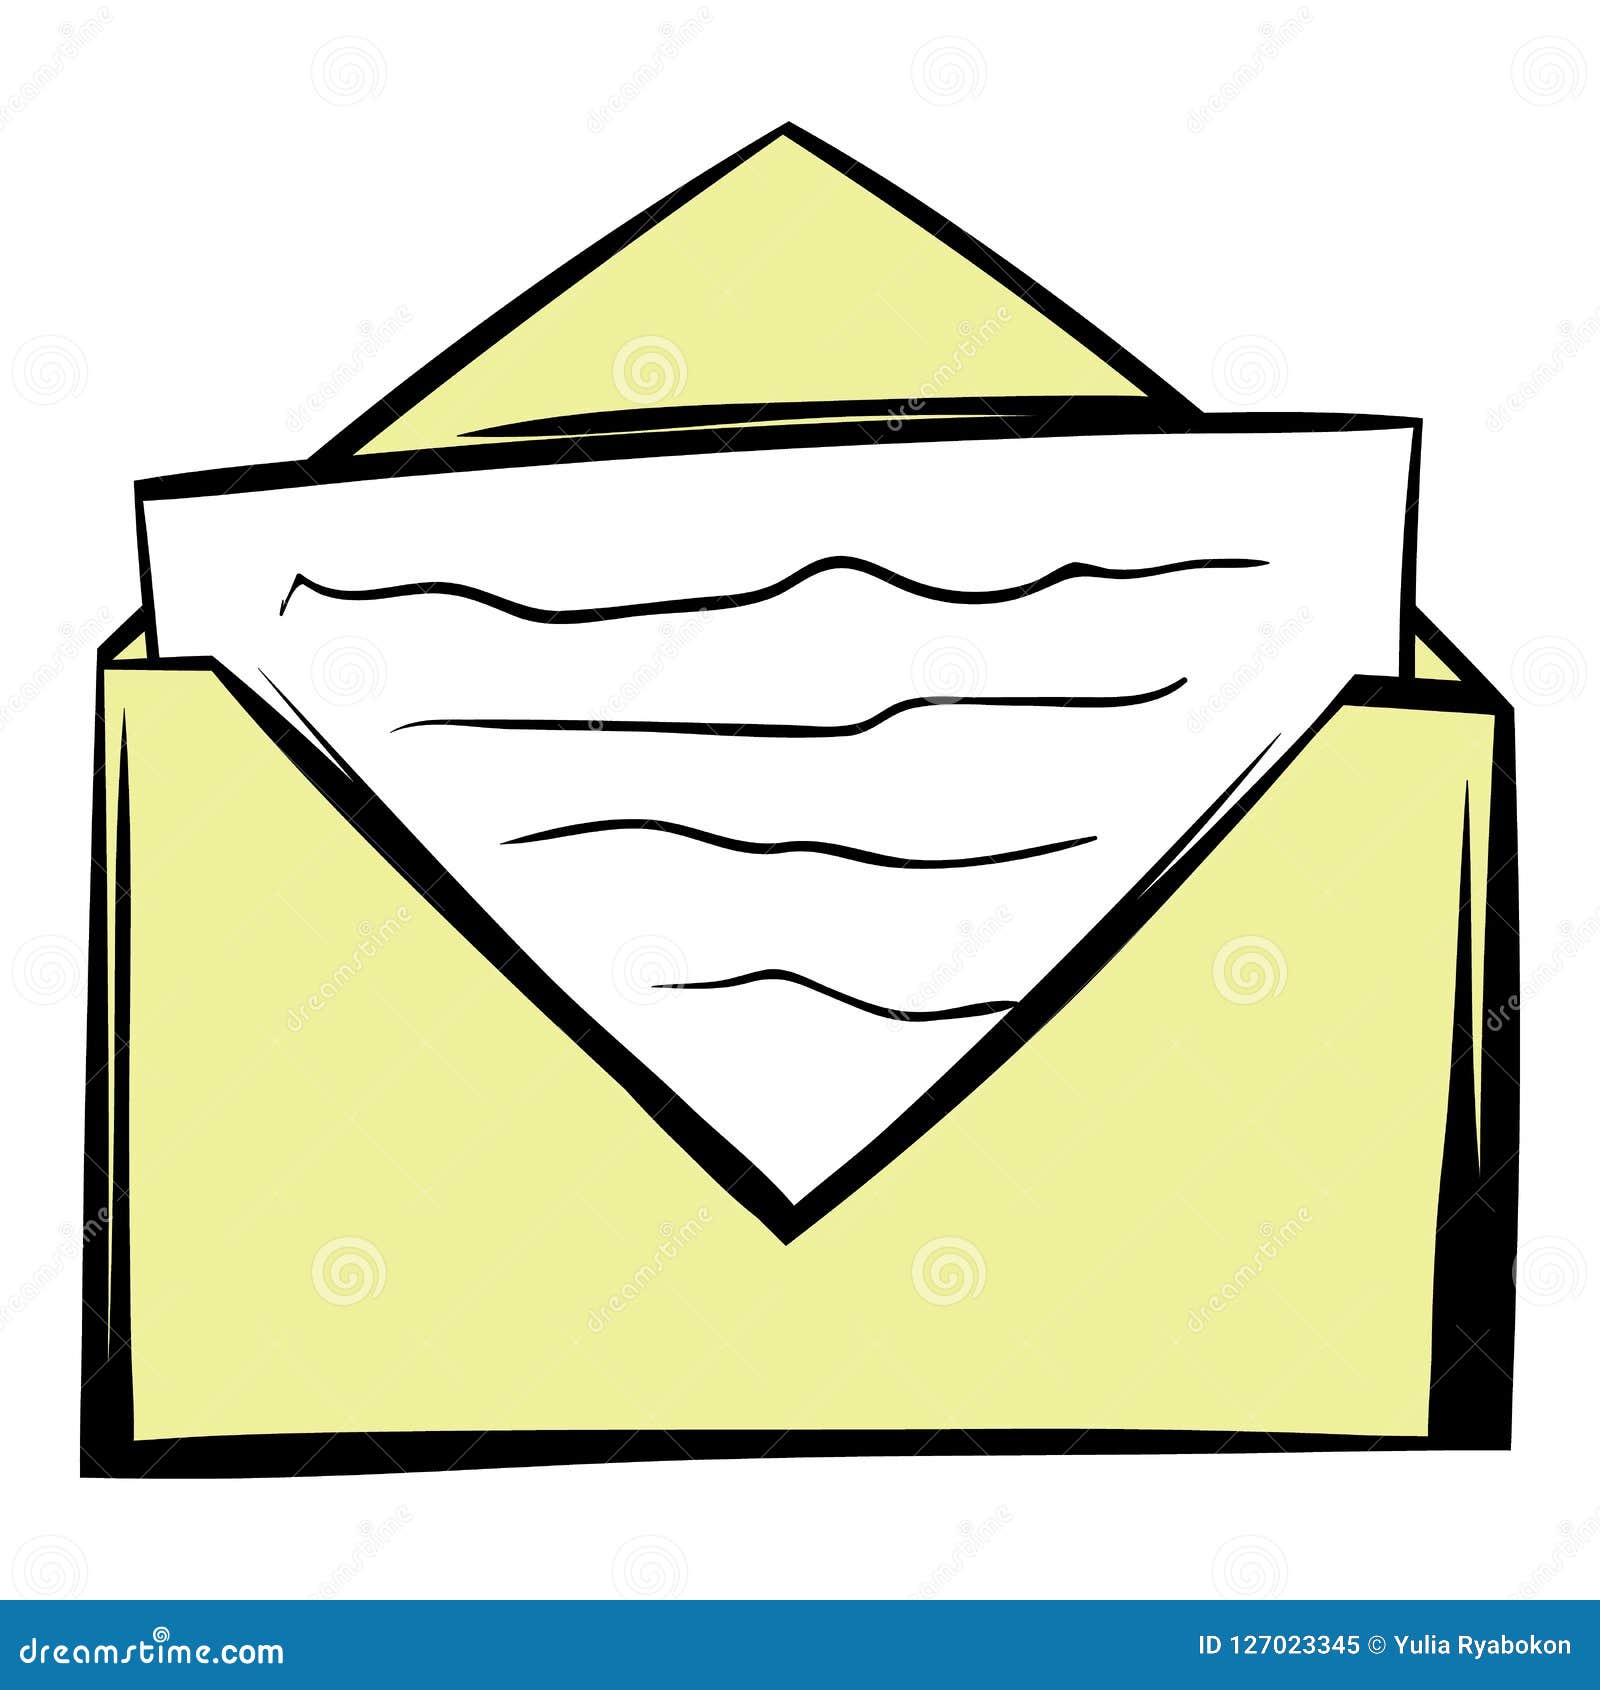 https://thumbs.dreamstime.com/z/letter-envelope-icon-cartoon-letter-envelope-icon-cartoon-style-isolated-illustration-127023345.jpg